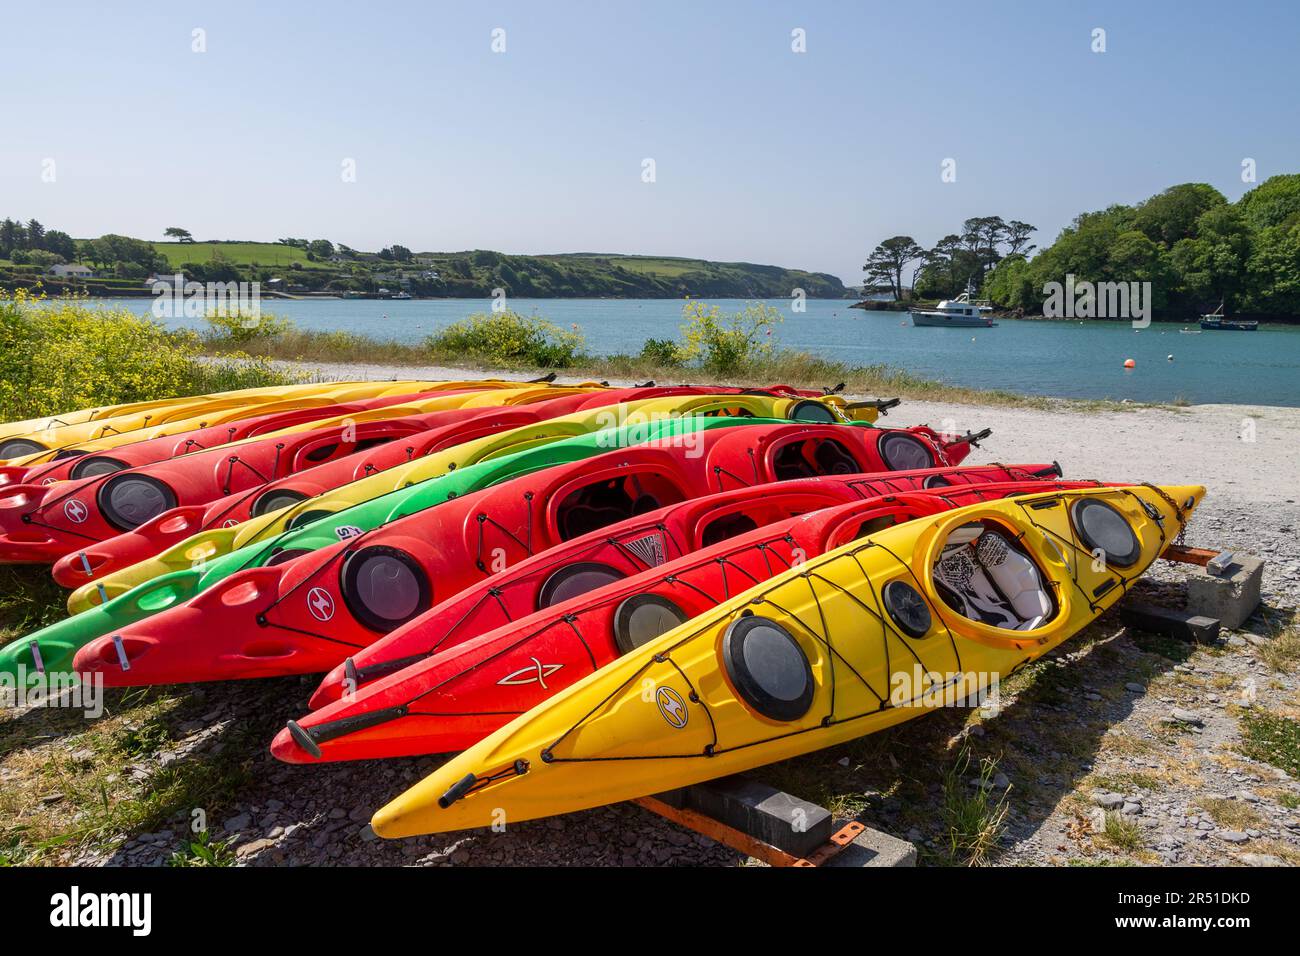 Rangées de kayaks tiré sur une plage de galets après un jours de canotage Banque D'Images